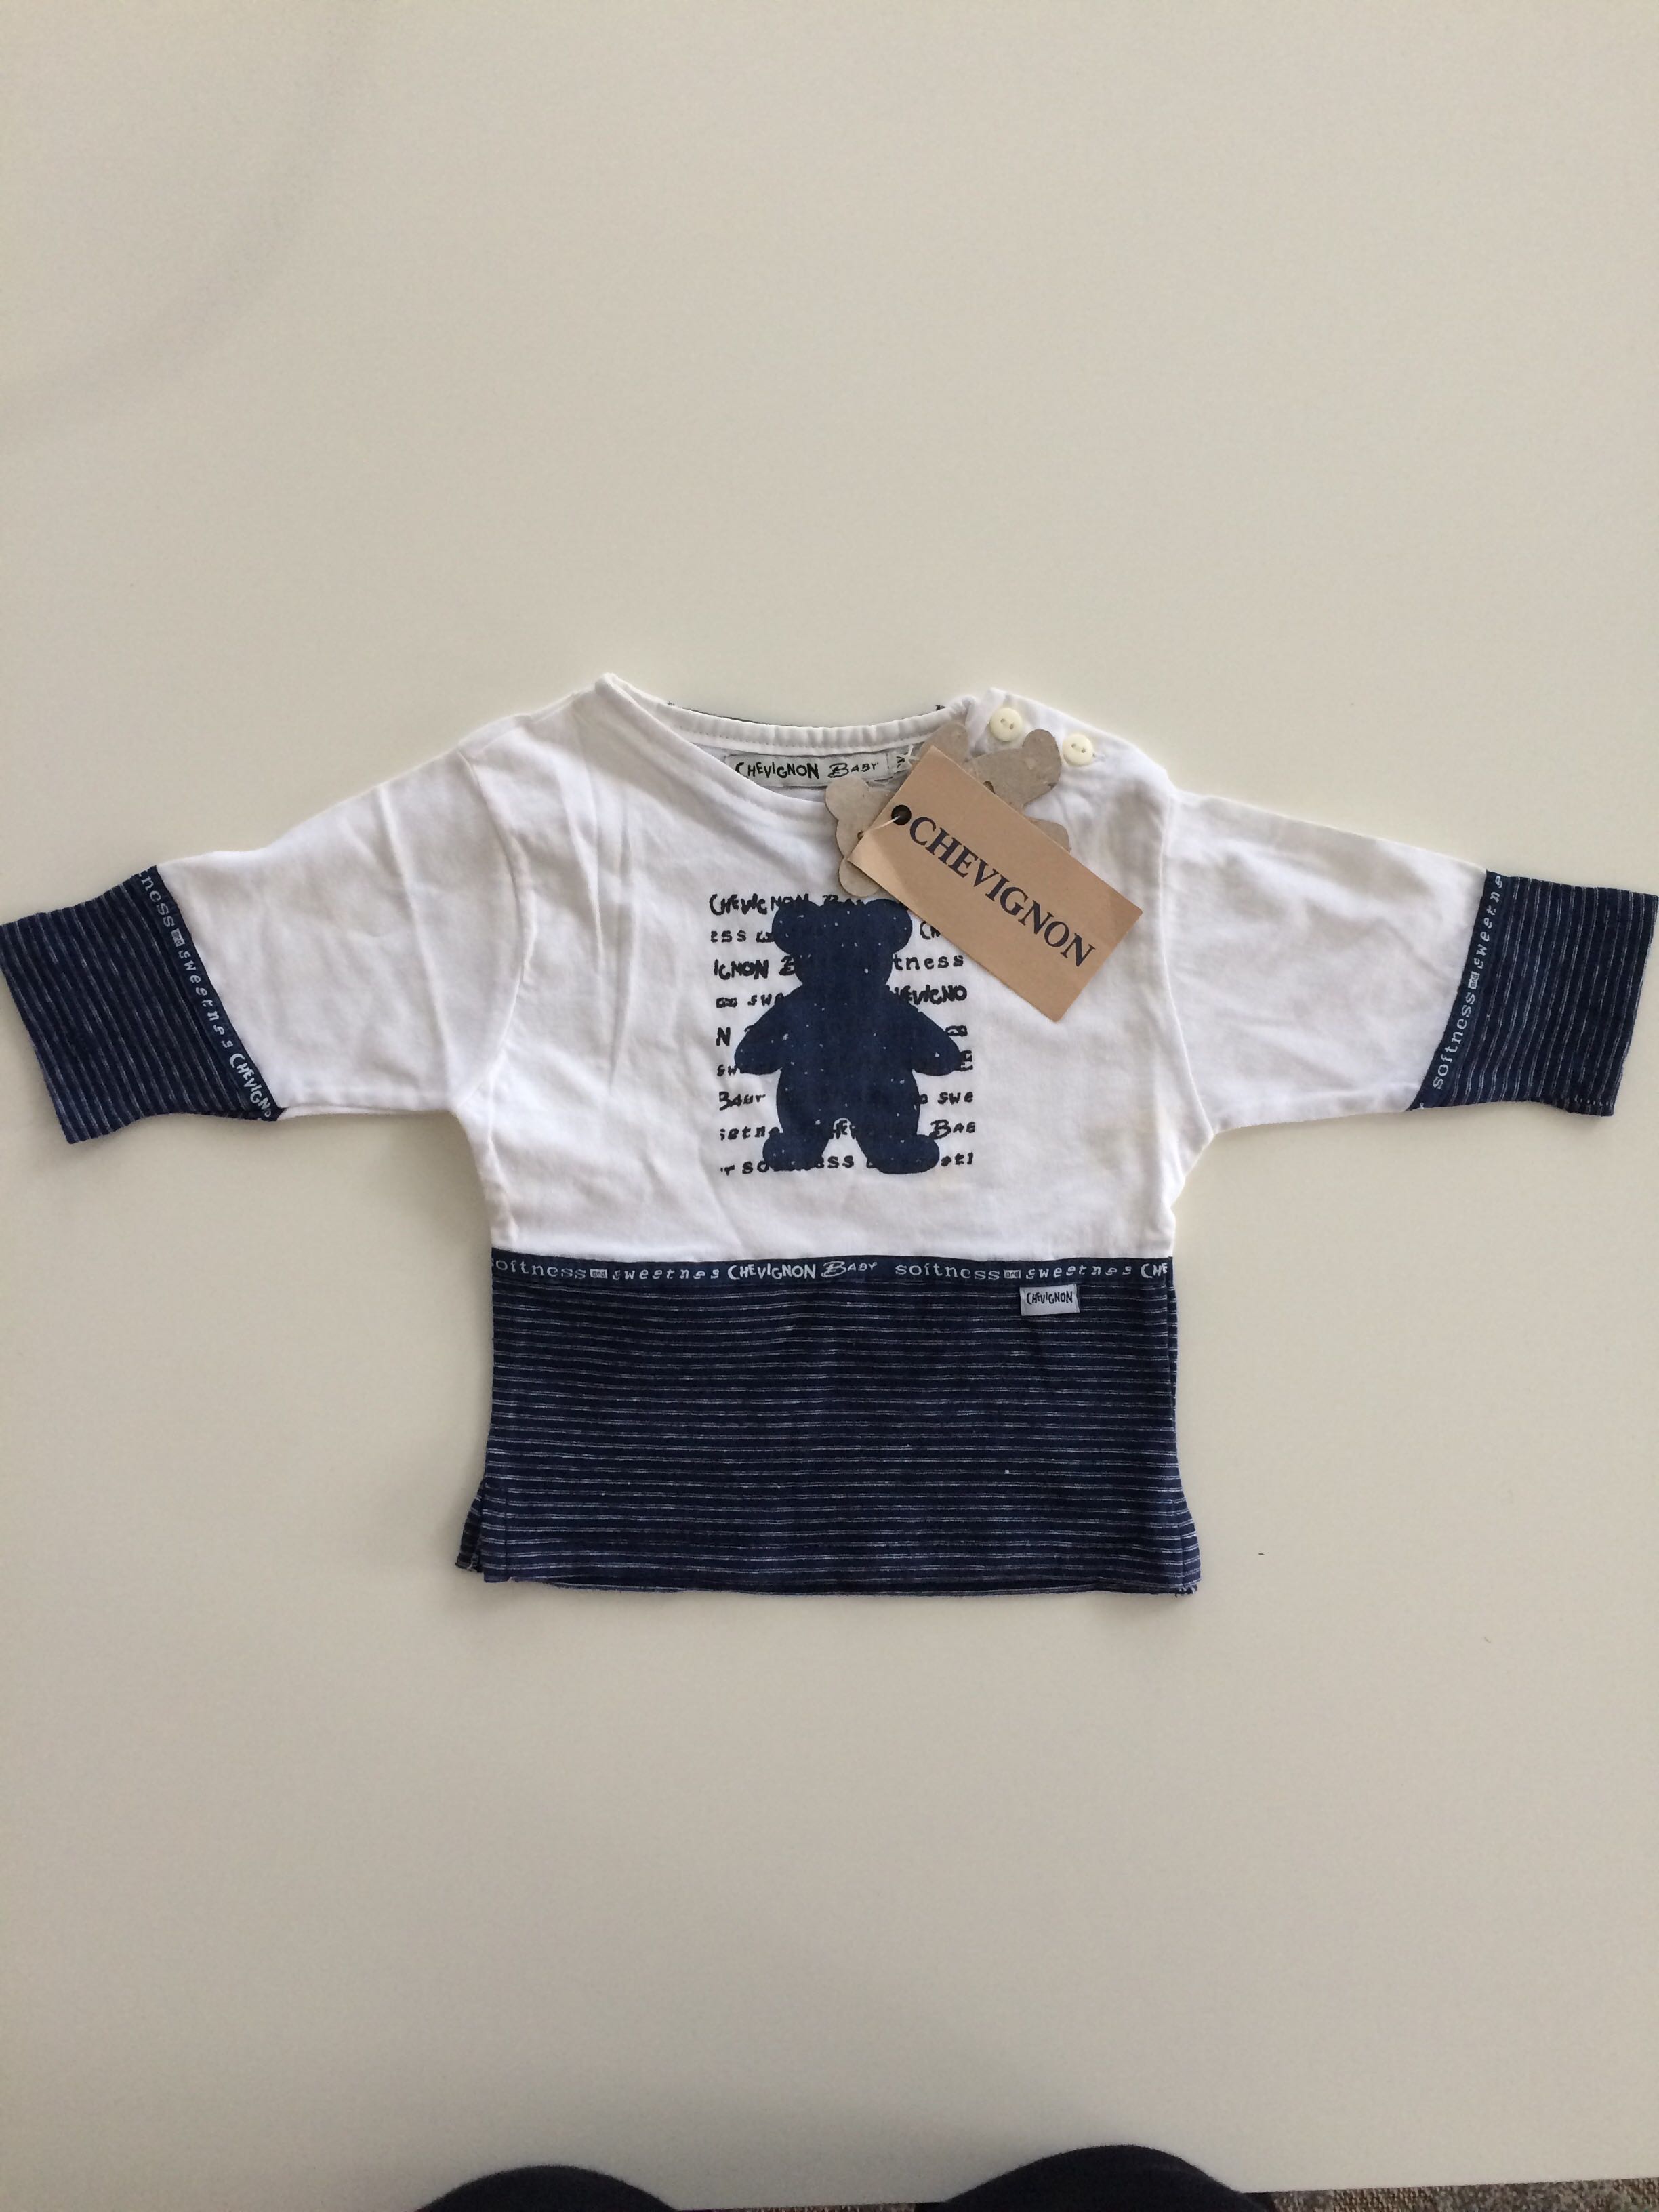 İkinci El Bebek Giyim Mağazası Bebecruz.com açıldı